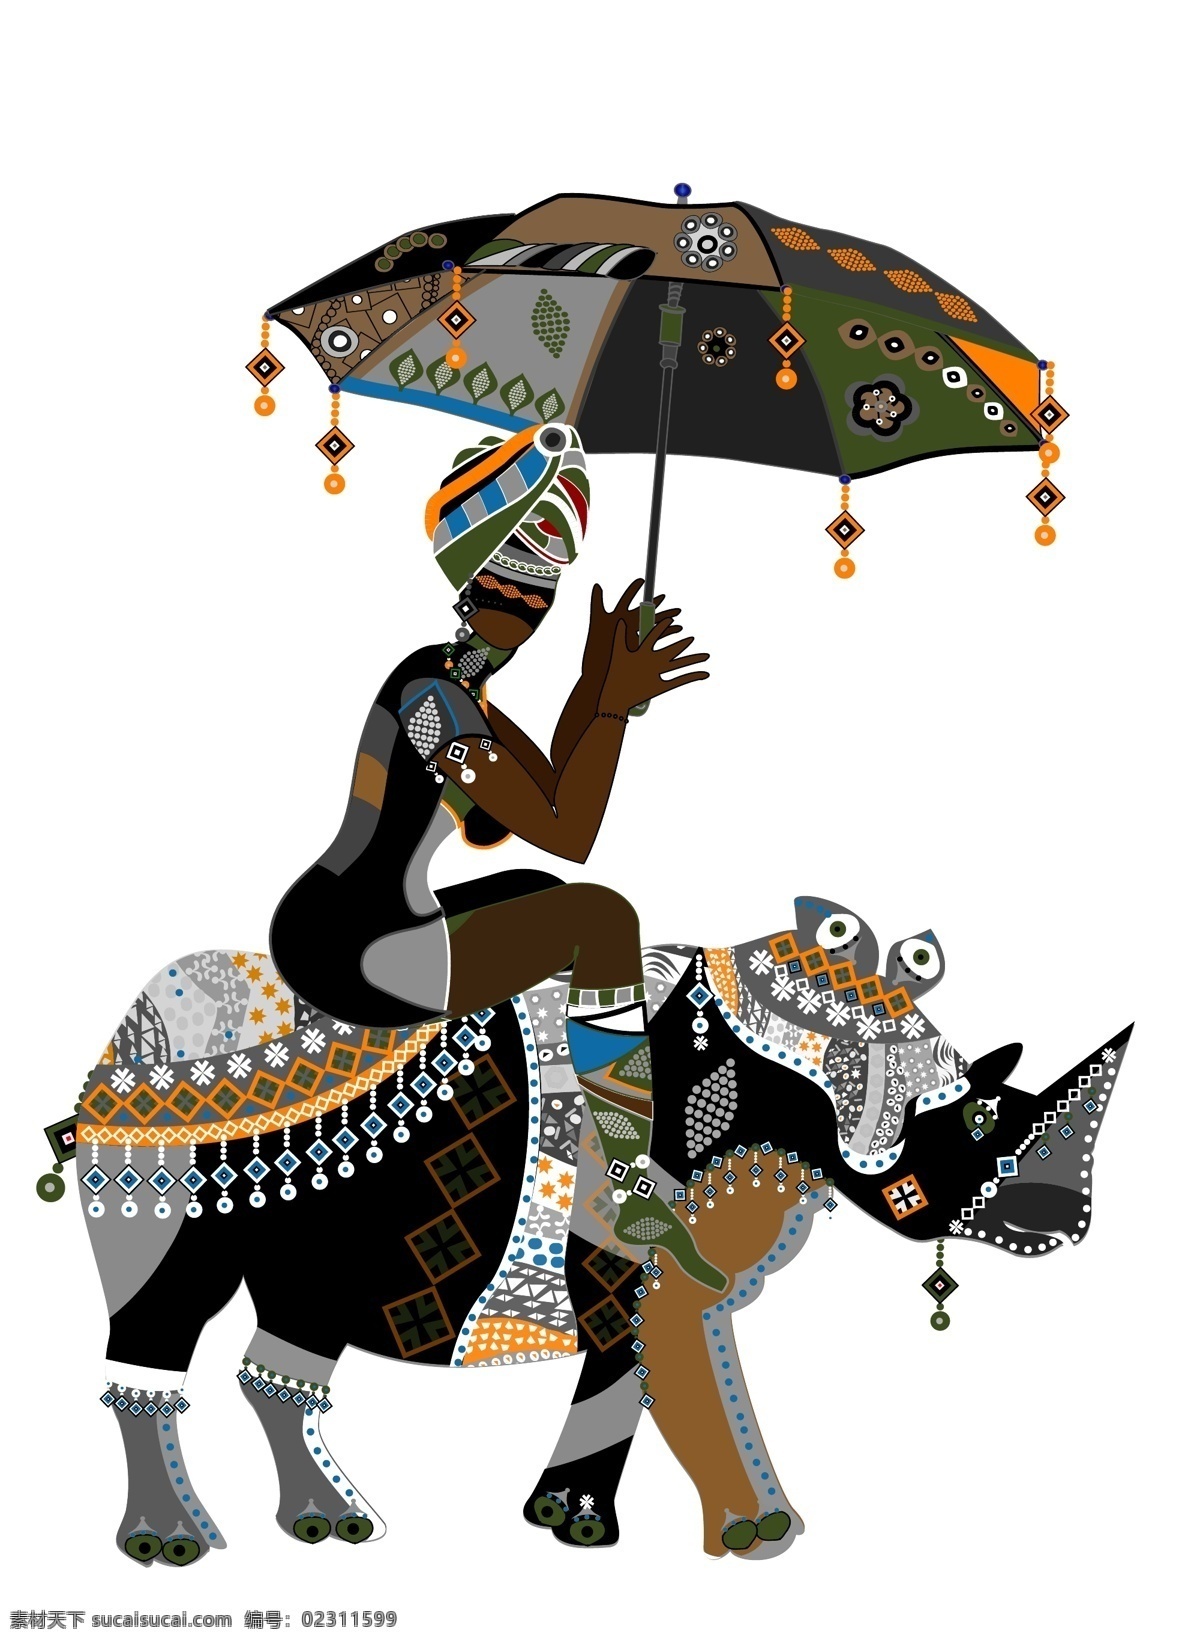 异域风情 图案 犀牛 异域风情图案 非洲土著花纹 非洲美女 矢量图 矢量人物